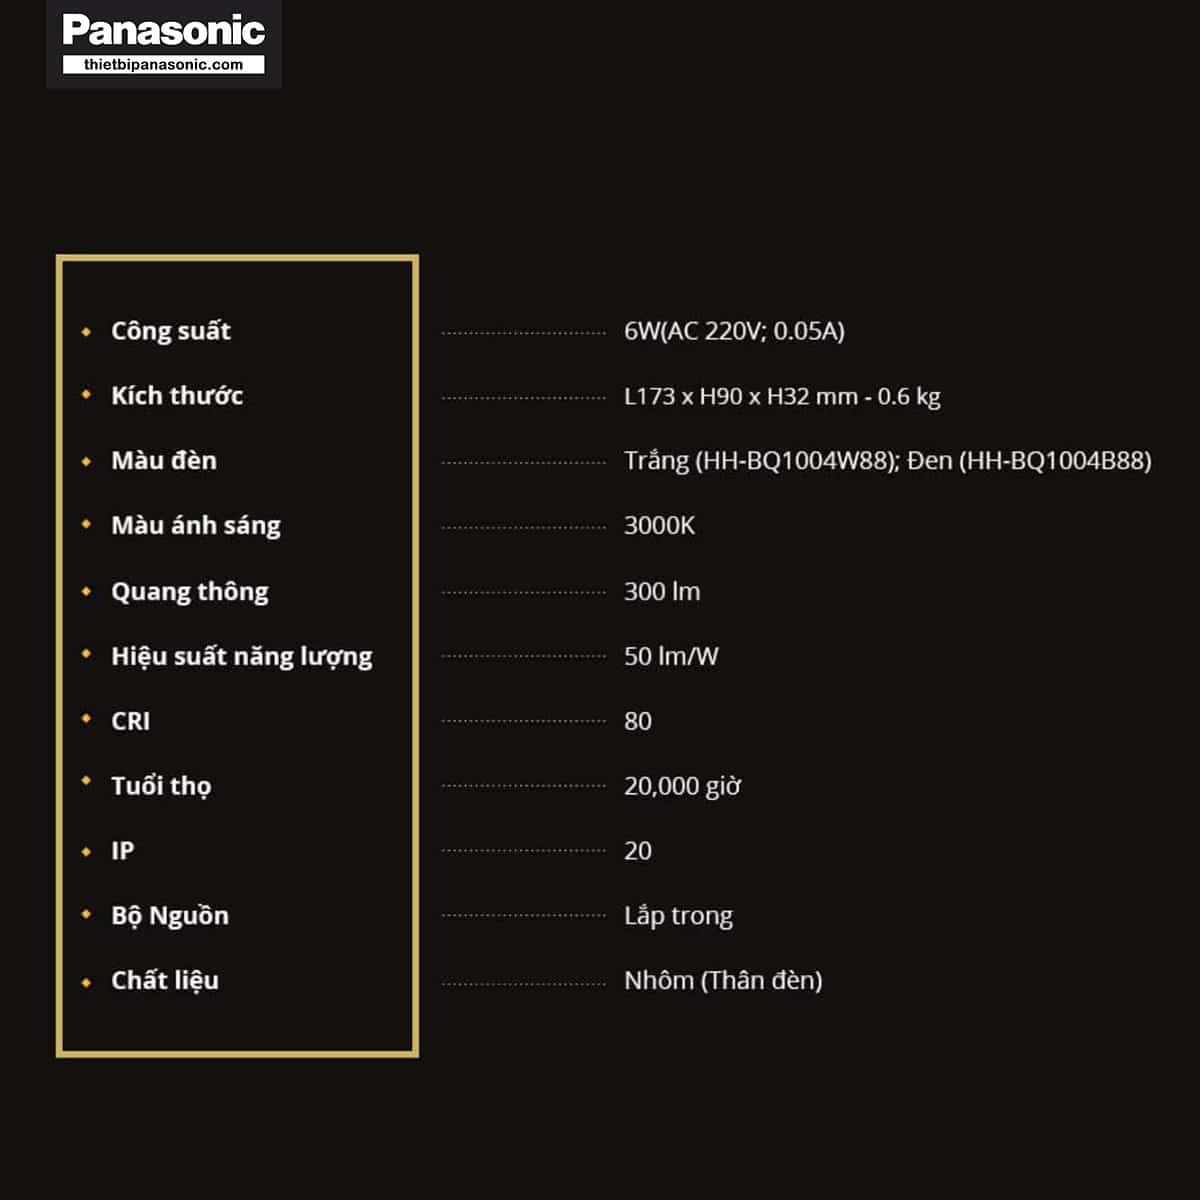 Thông số kỹ thuật của Đèn rọi tường Panasonic HHBQ1004B88 Màu Đen